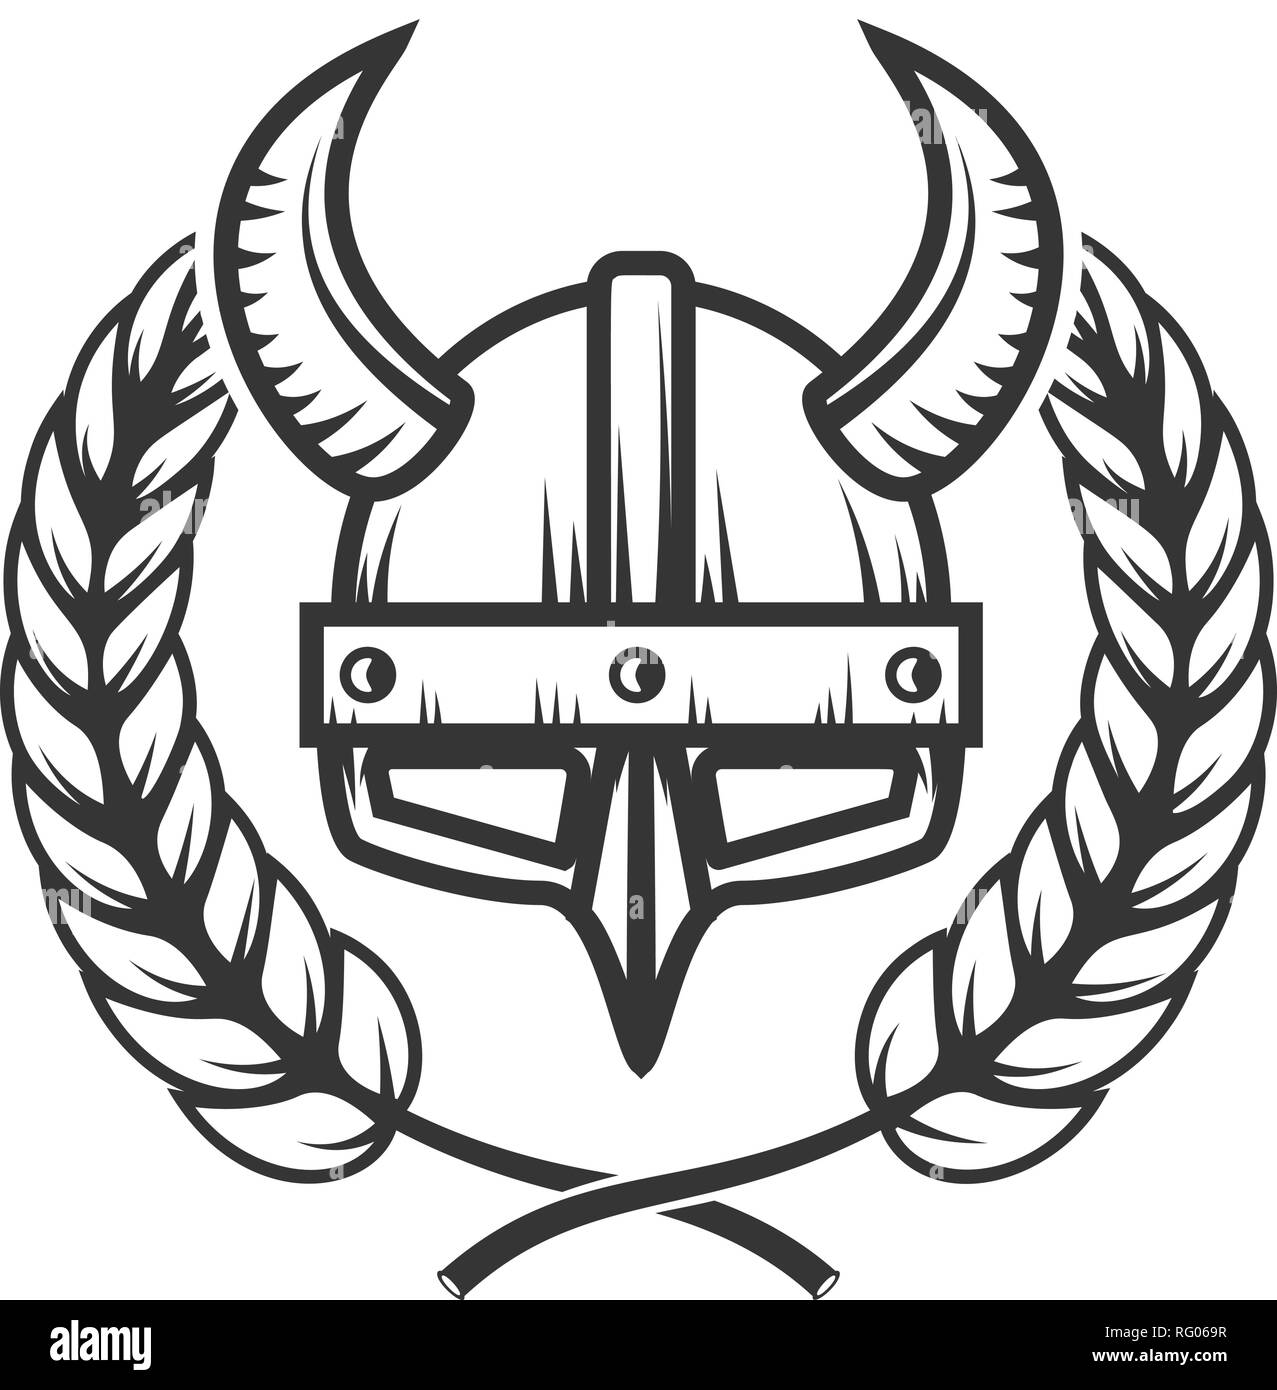 Emblem Vorlage mit gehörnten Helm und Kranz. Design Element für Logo, Label, Emblem, sign. Vector Illustration Stock Vektor